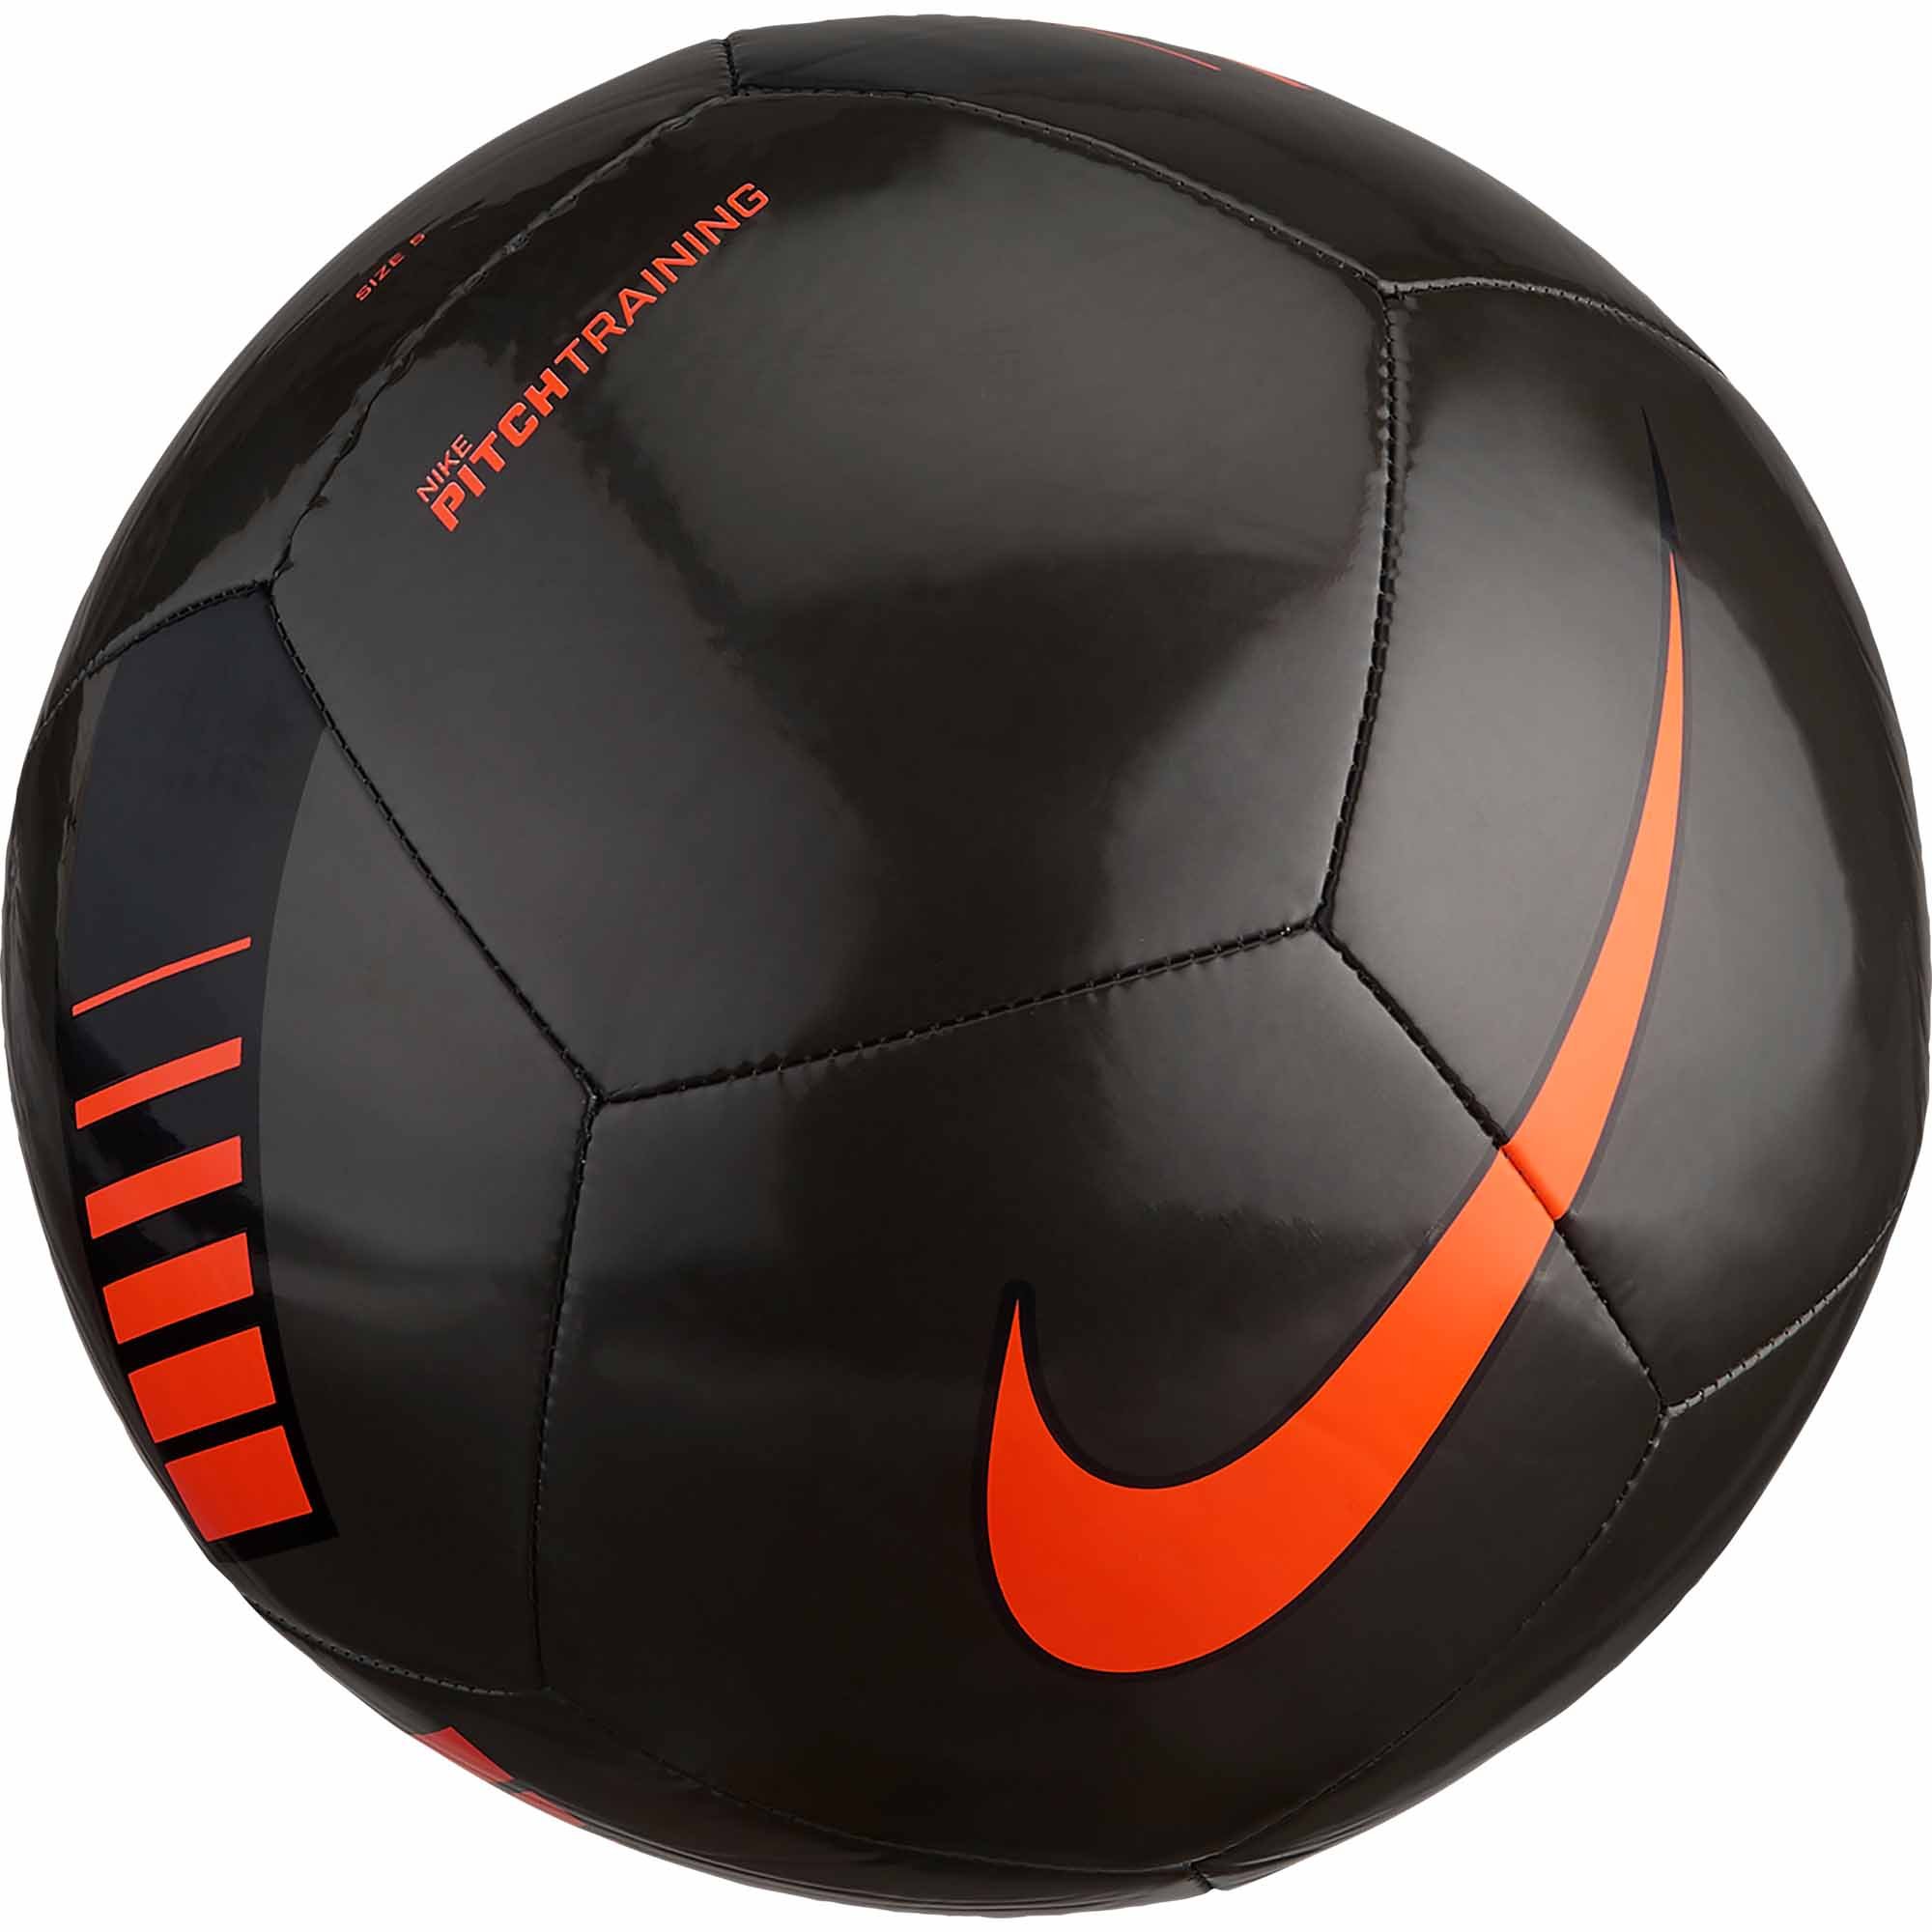 nike soccer ball orange